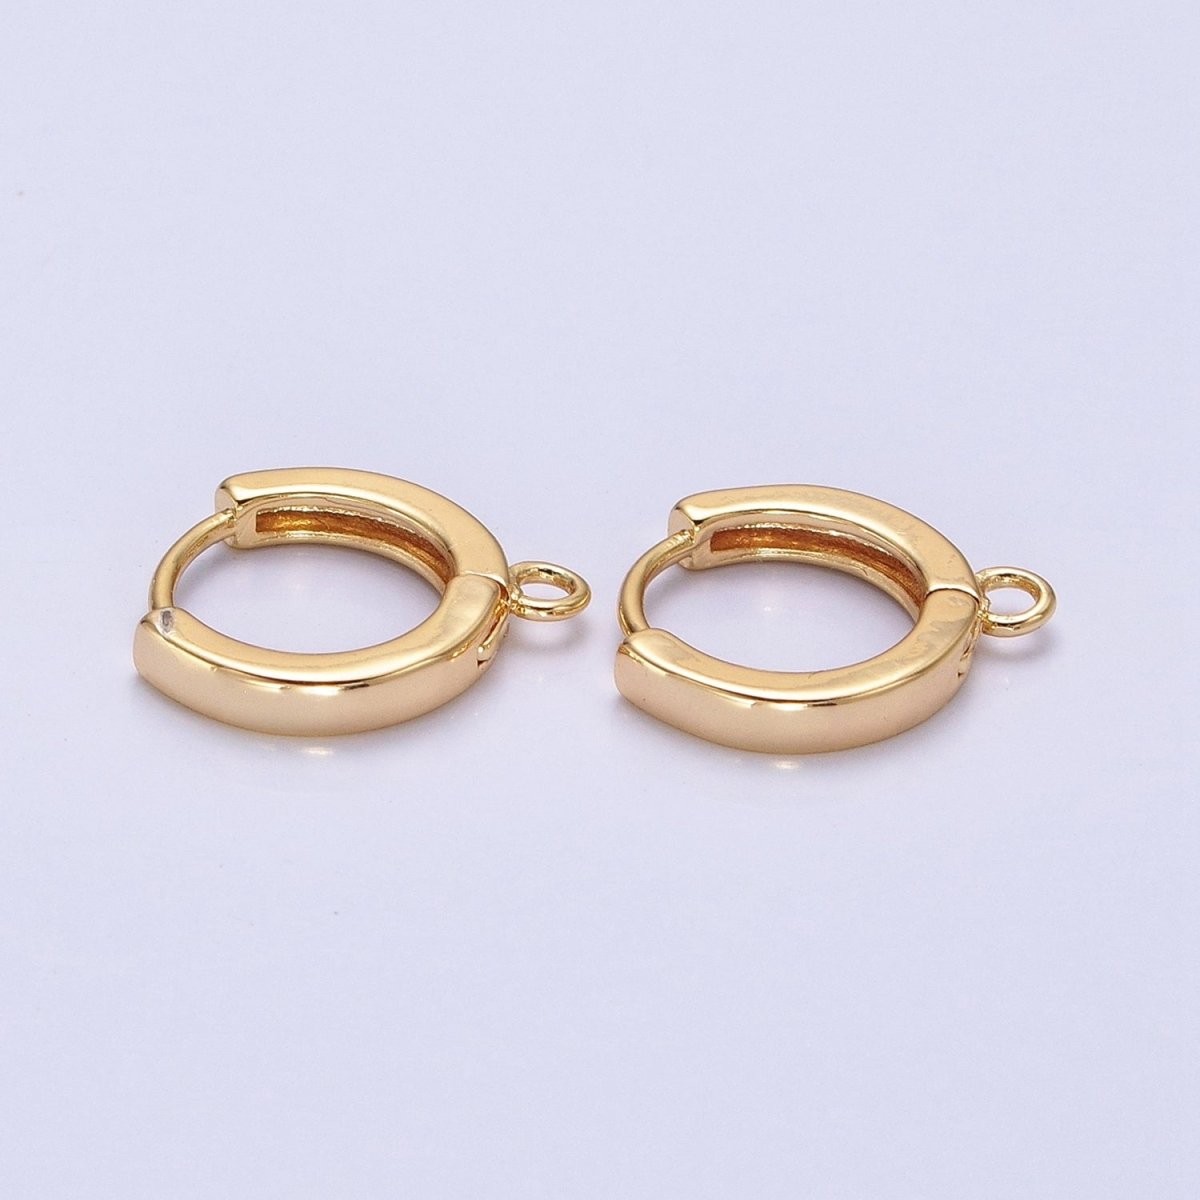 12mm Round Huggie Open Loop Earrings Supply in Gold & Silver | Z-288 Z-289 - DLUXCA